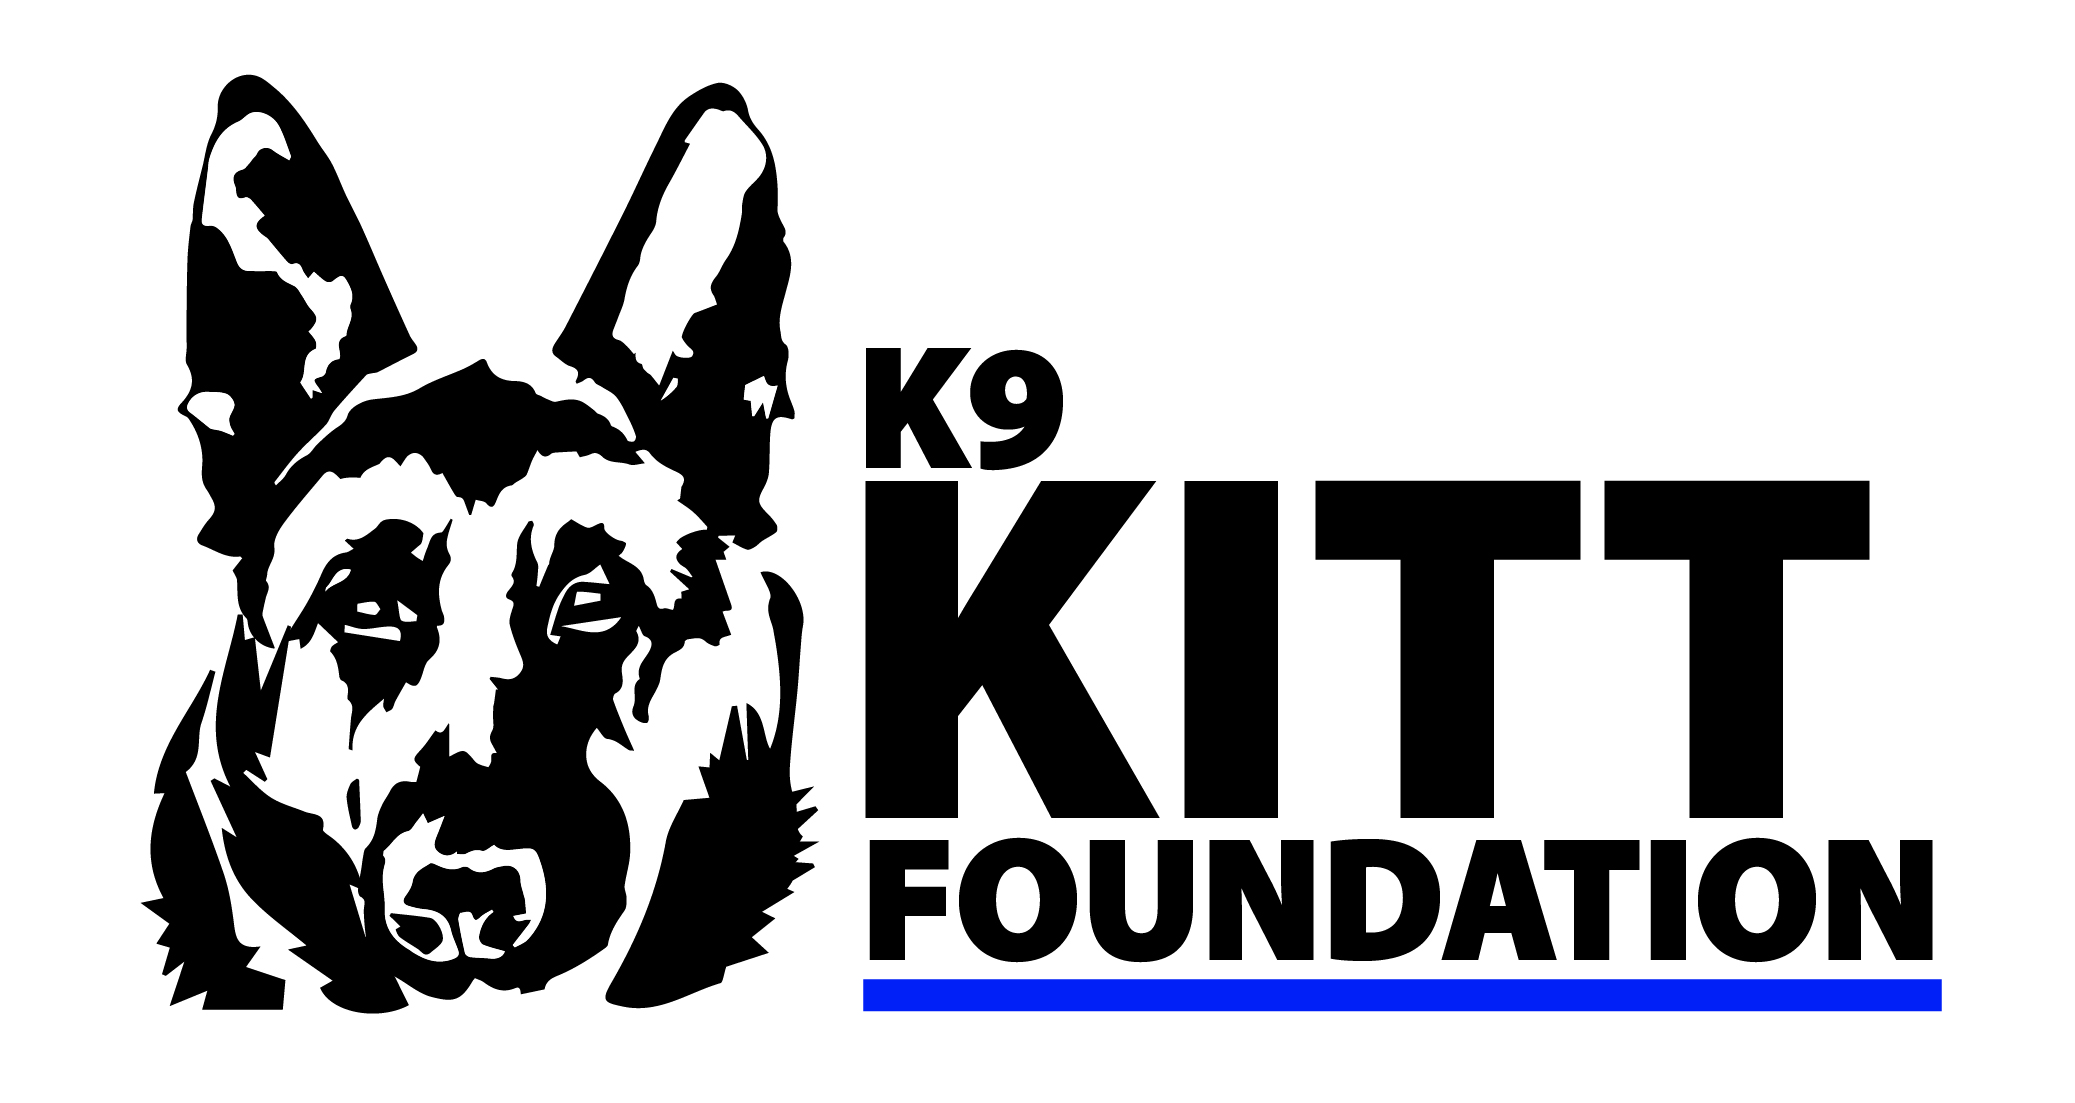 K9 Kitt Foundation